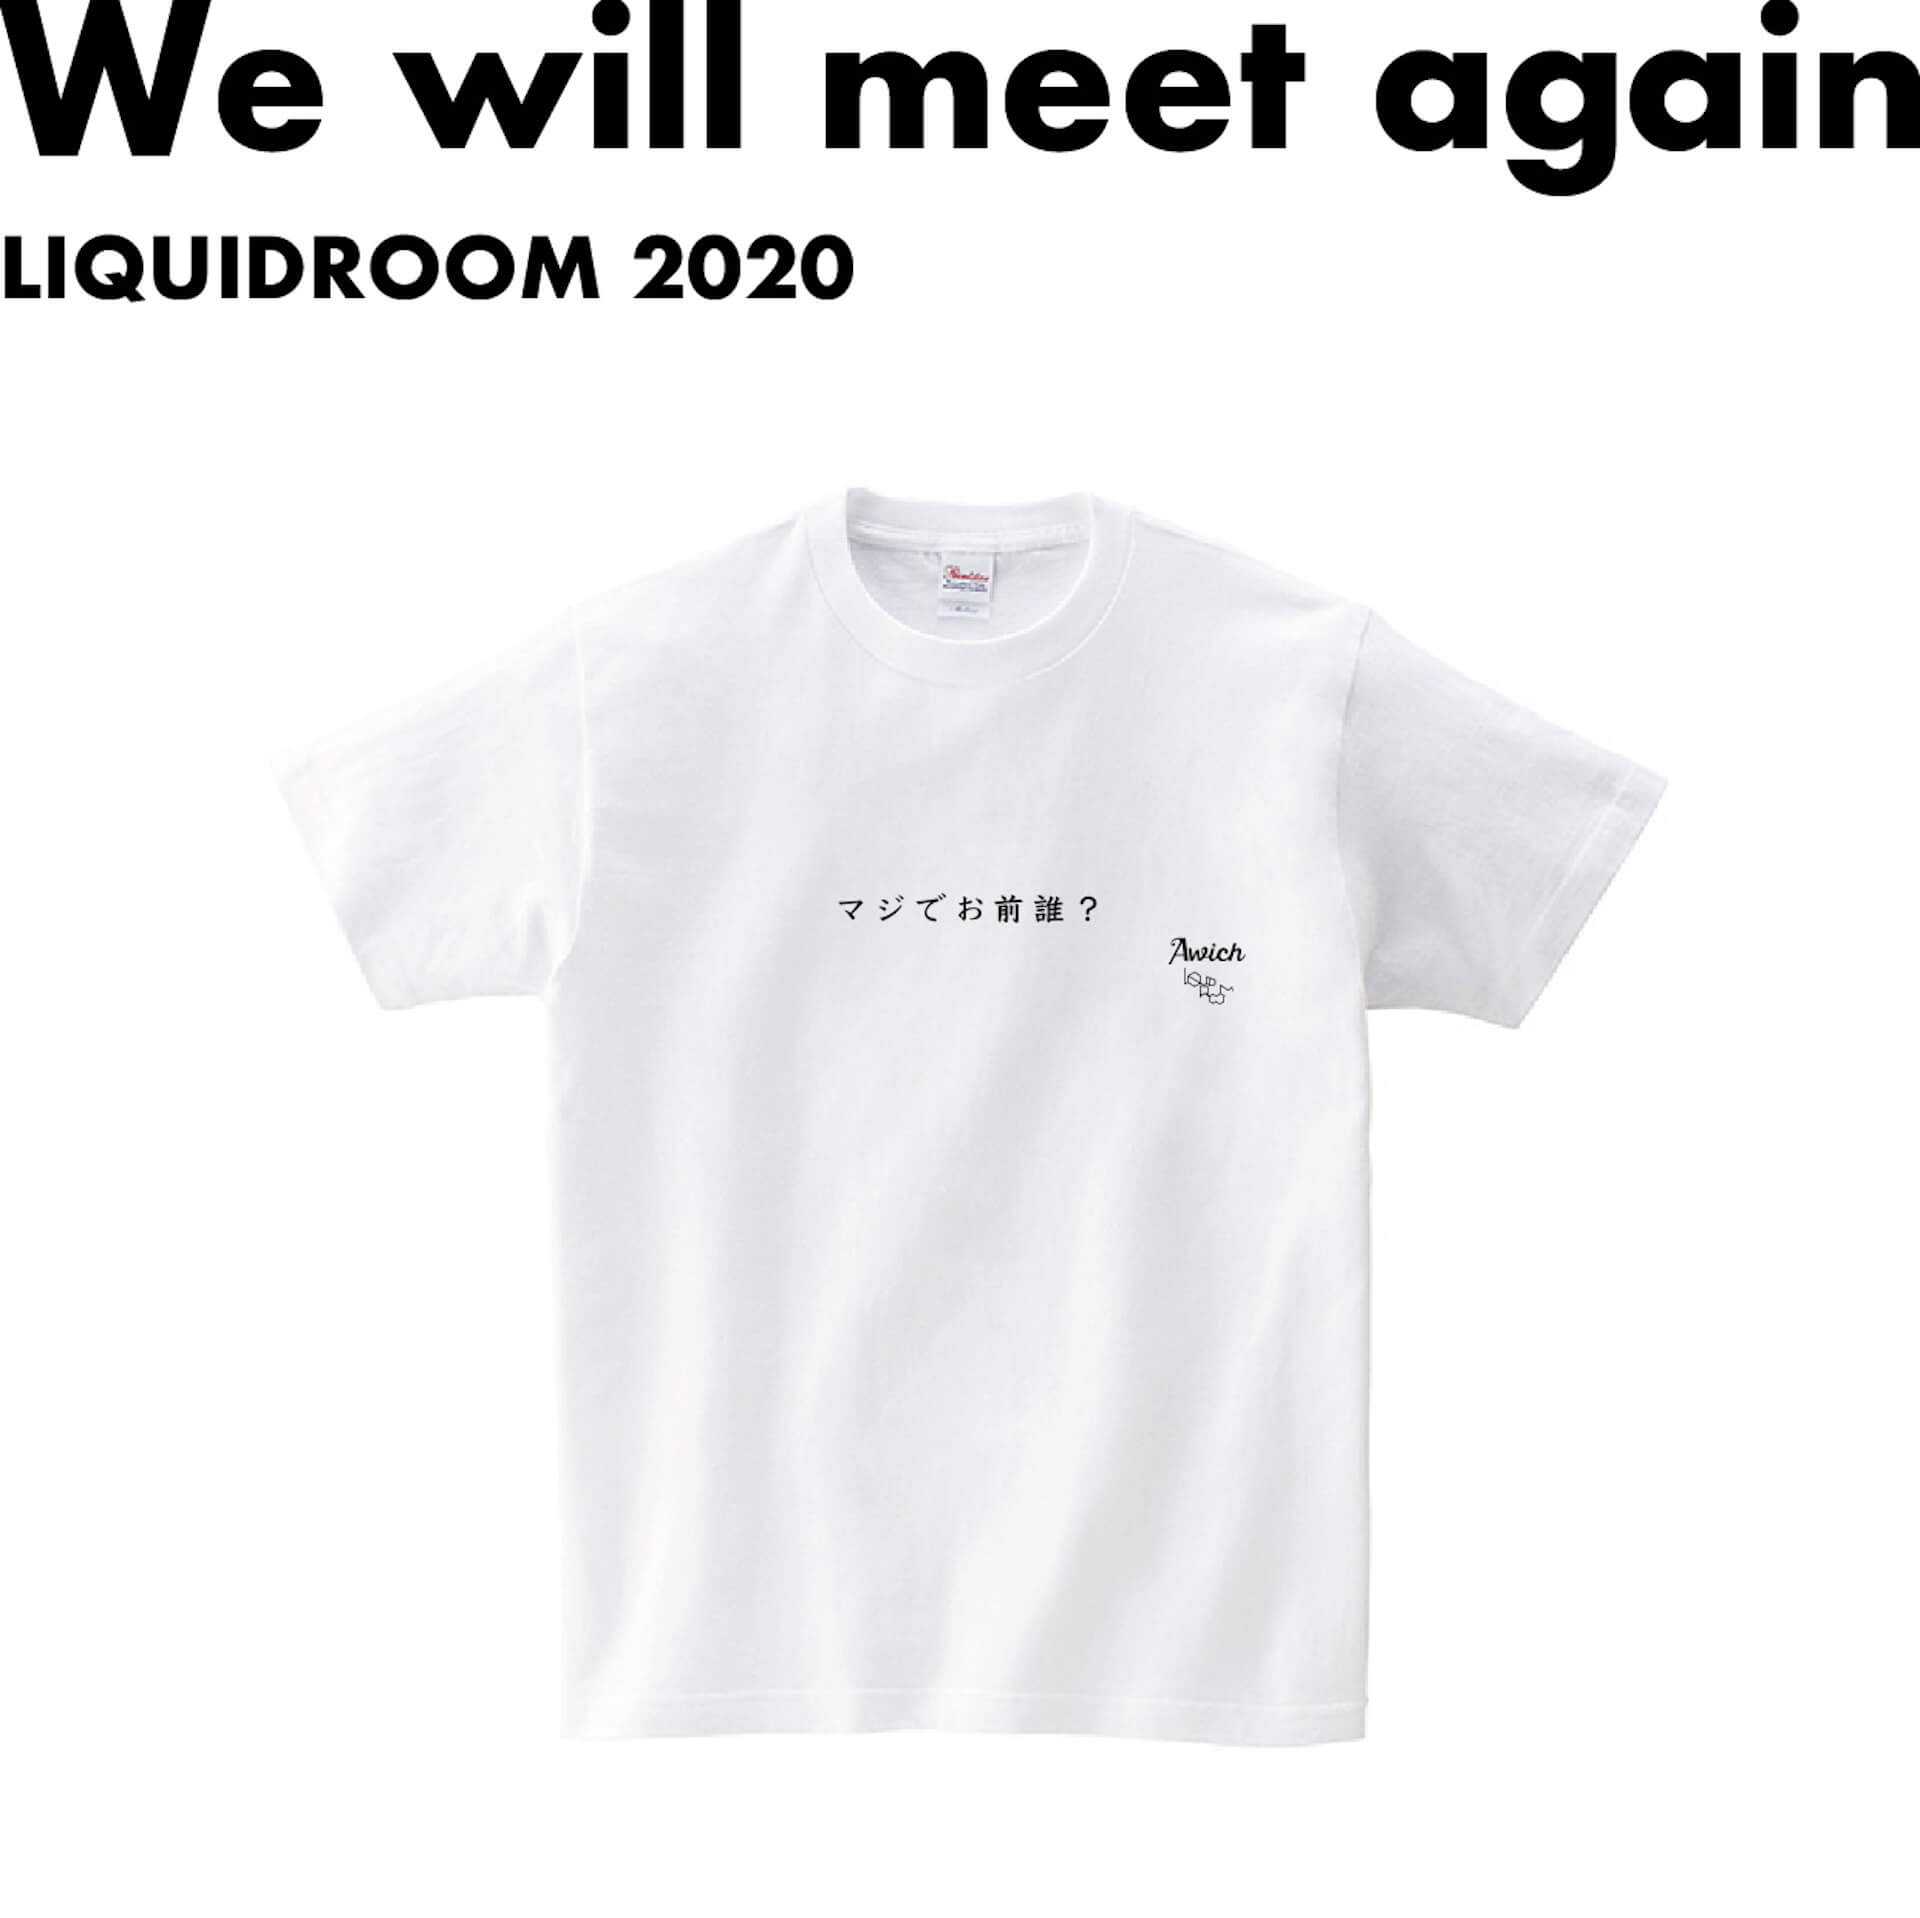 Awich、世に問う「お前誰T」　LIQUIDROOMとアーティストたちによるメッセージTシャツ・プロジェクト〈We will meet again〉より発表 music200529-liquidroom-awich-2